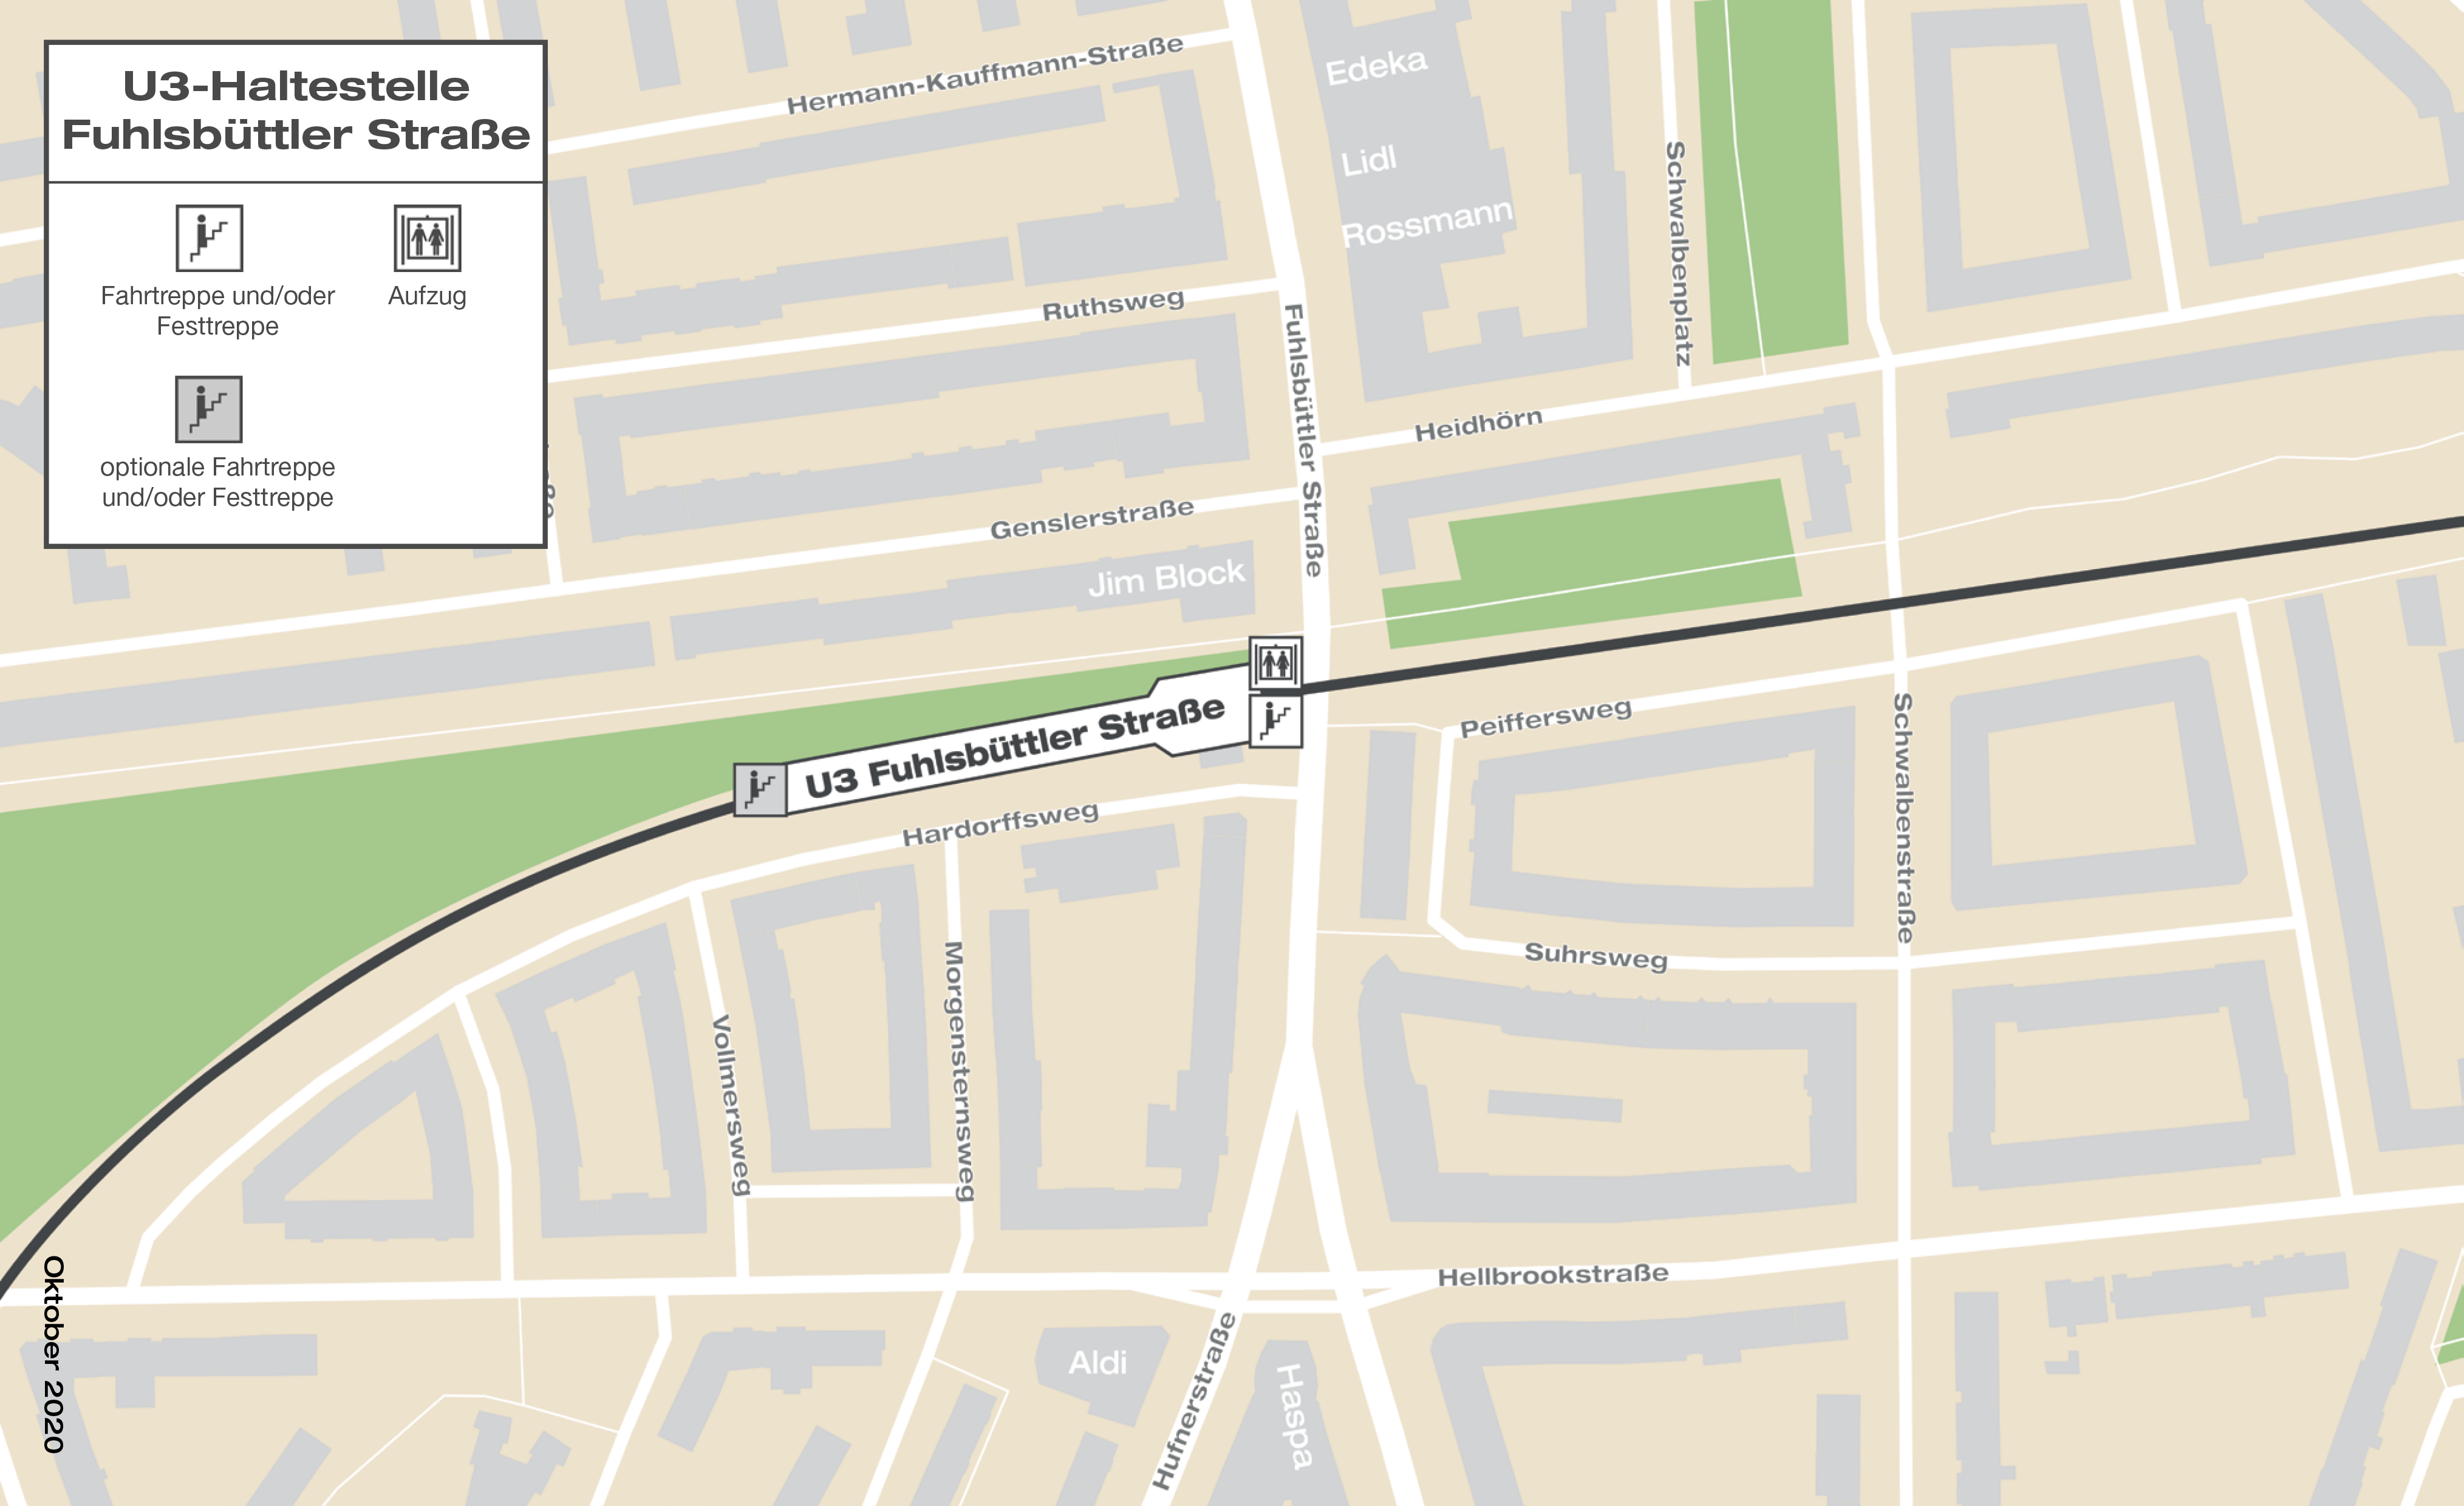 Haltestellengrafik der geplanten U3 Haltestelle Fuhlsbüttler Straße.